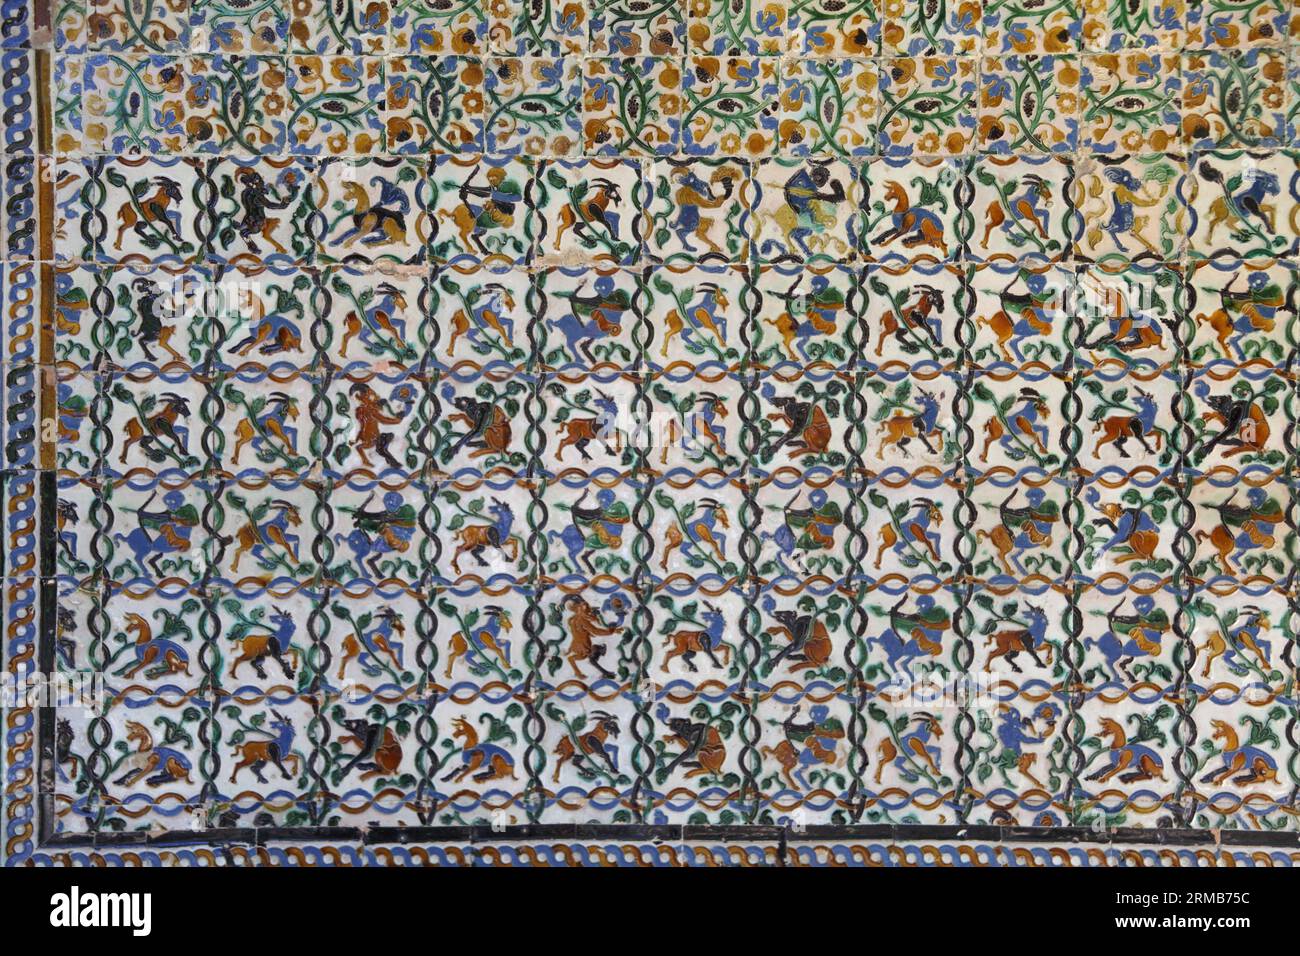 Mur carrelé mauresque du 14e siècle dans les jardins du palais royal de l'Alcazar montrant des images de créatures mythiques, Séville, Andalousie, Espagne Banque D'Images